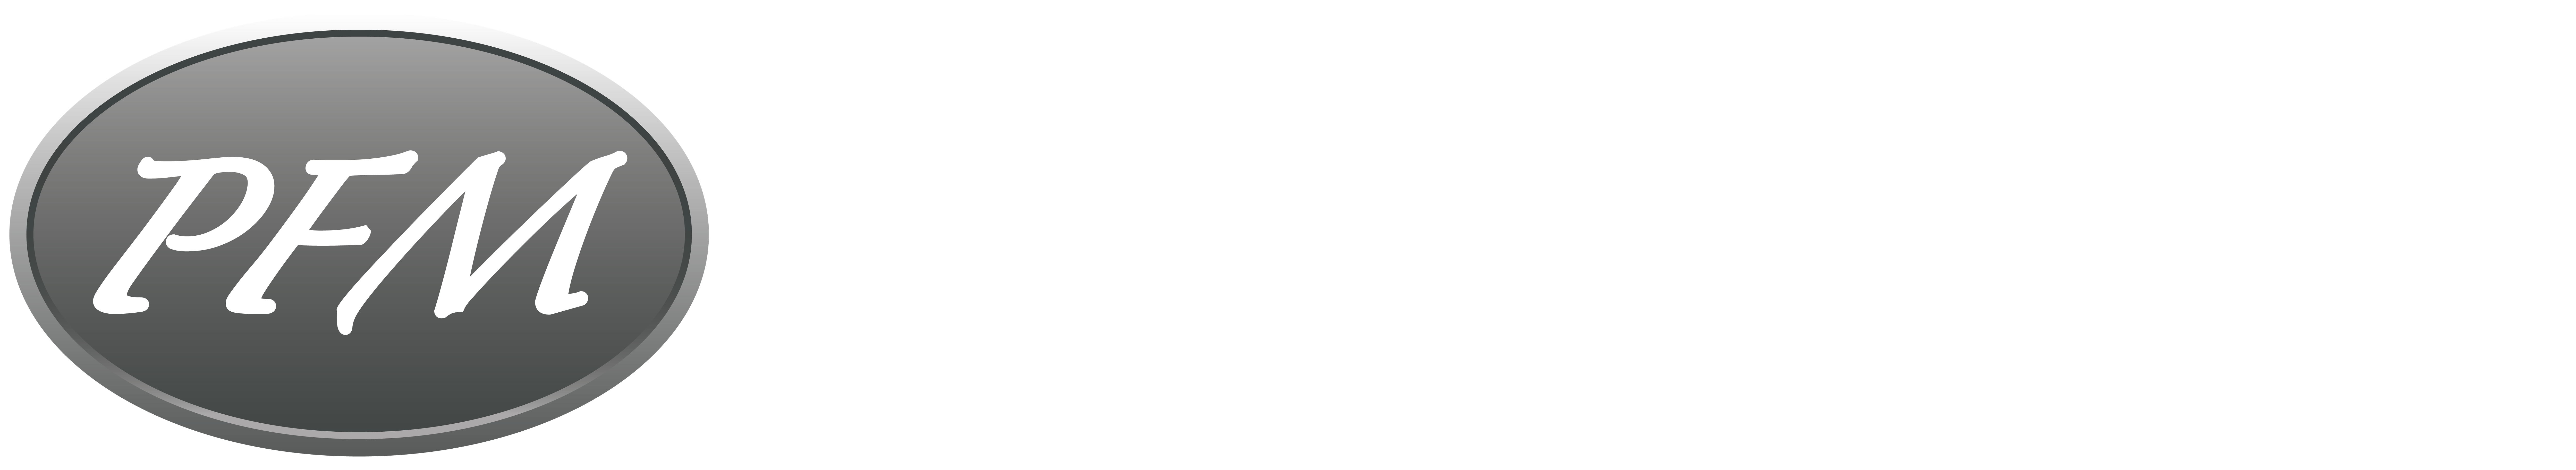 Portable Floormaker logo